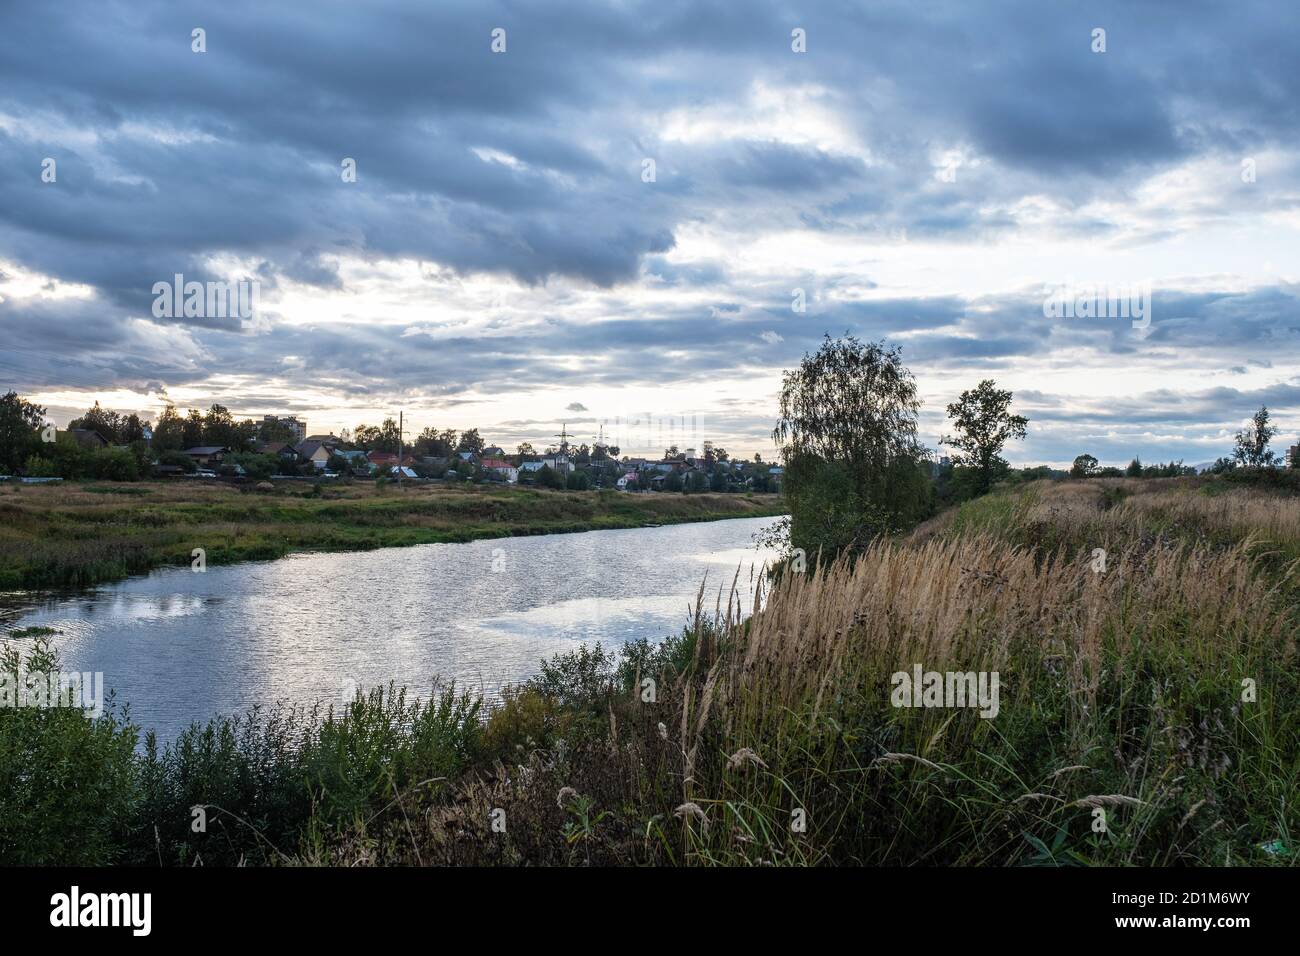 Serata tranquilla sul fiume Uvod all'interno della città di Ivanovo, Russia. Foto Stock